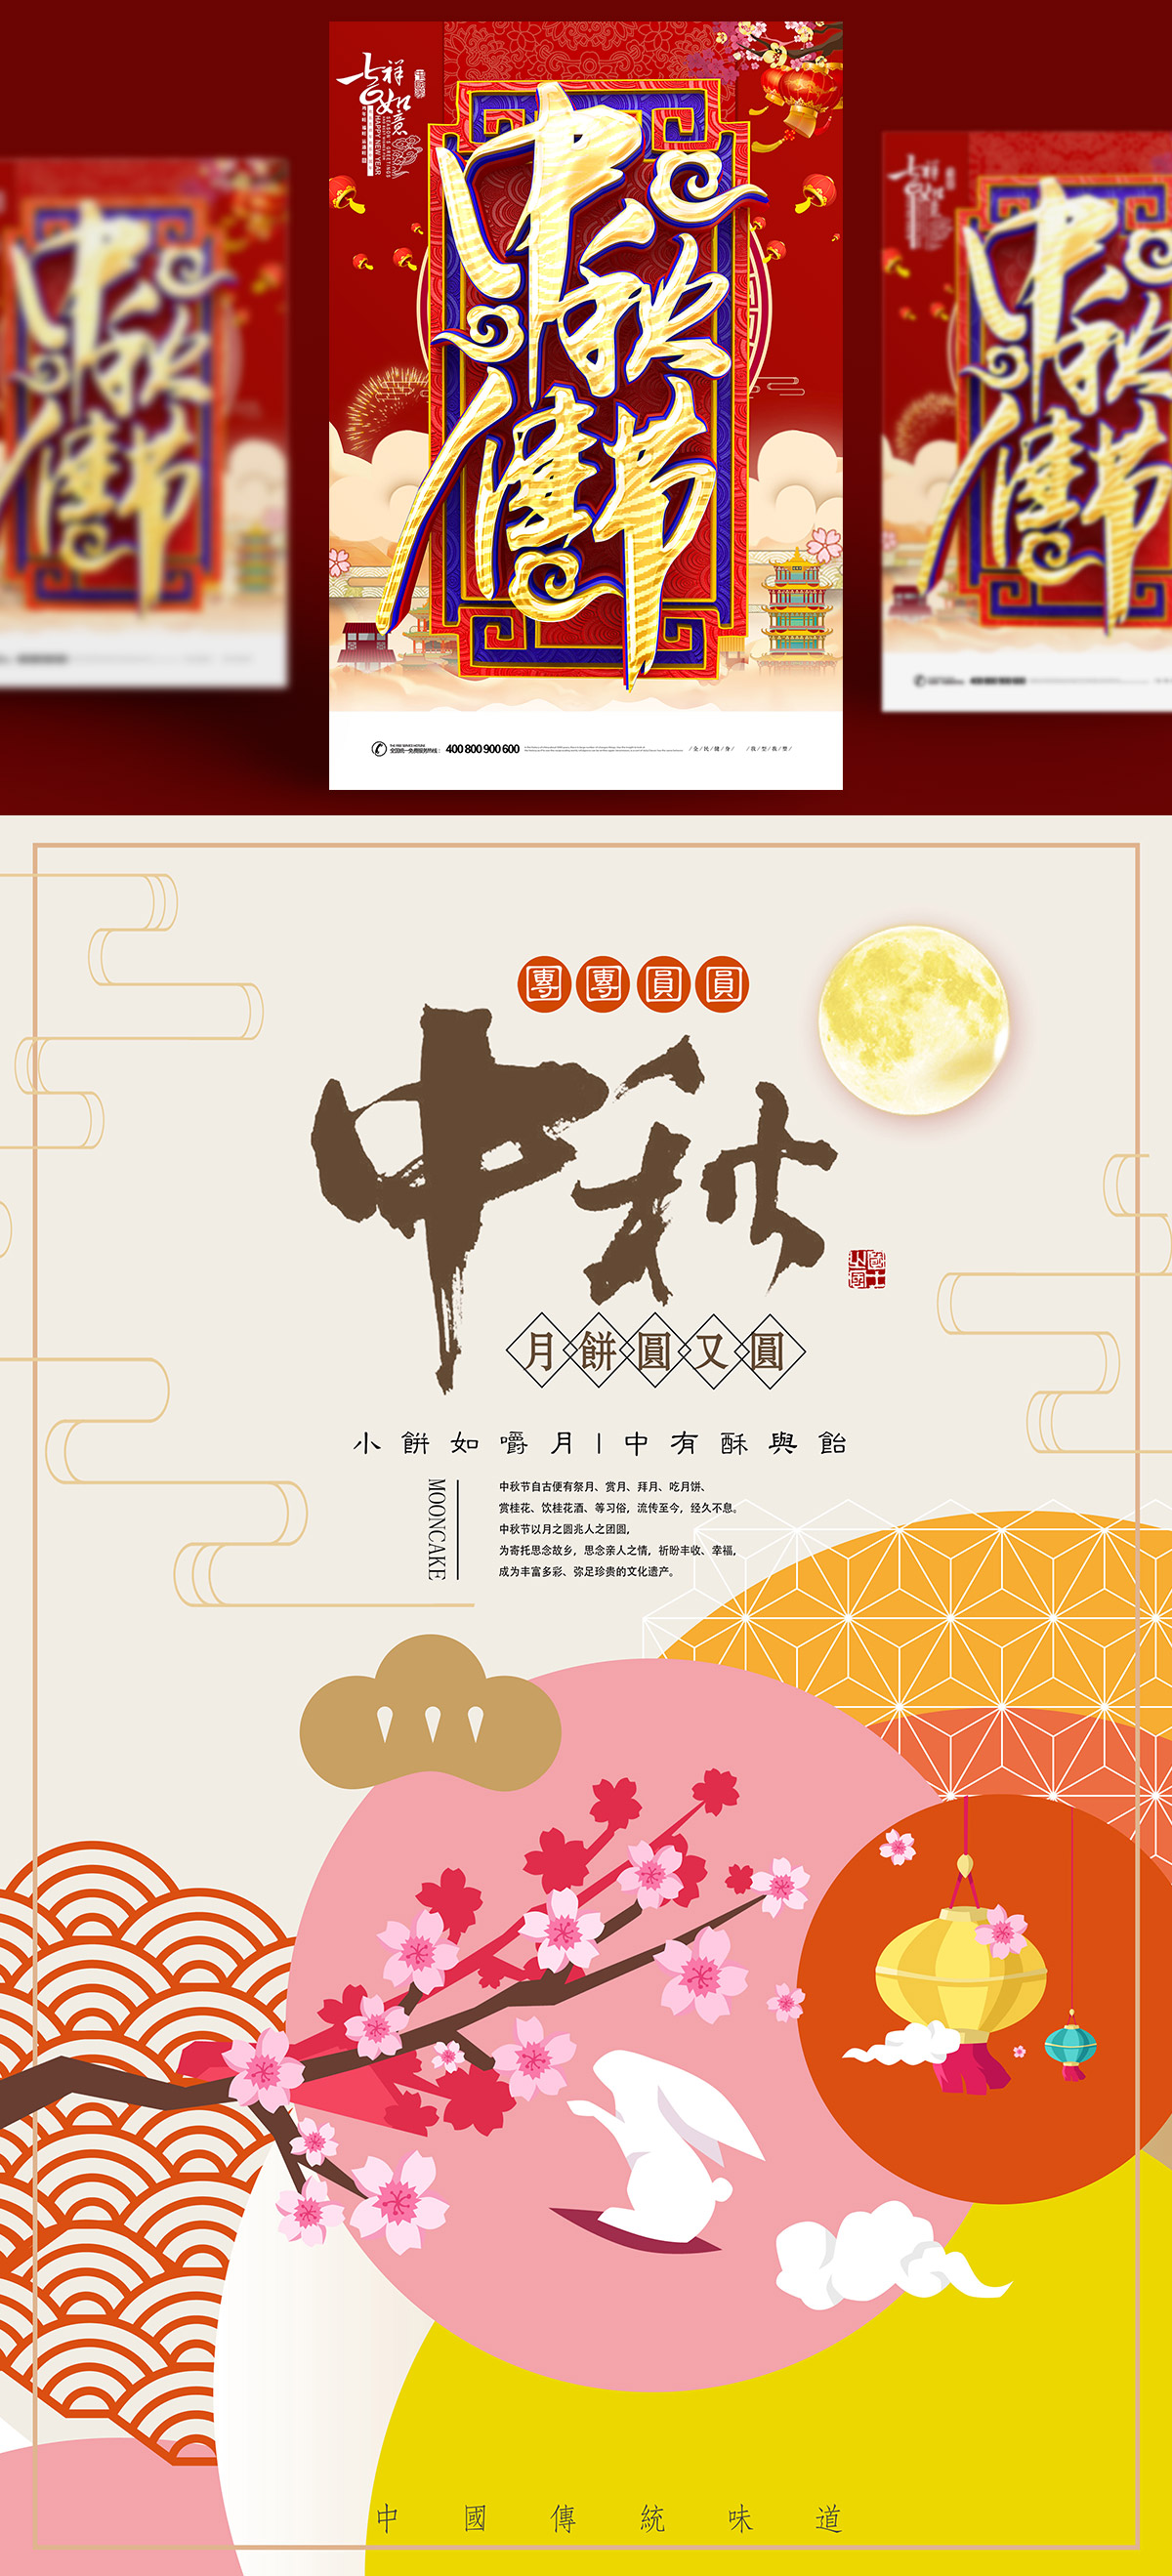 中国传统节日中秋节月亮节日团圆佳节矢量海报设计素材Mid a